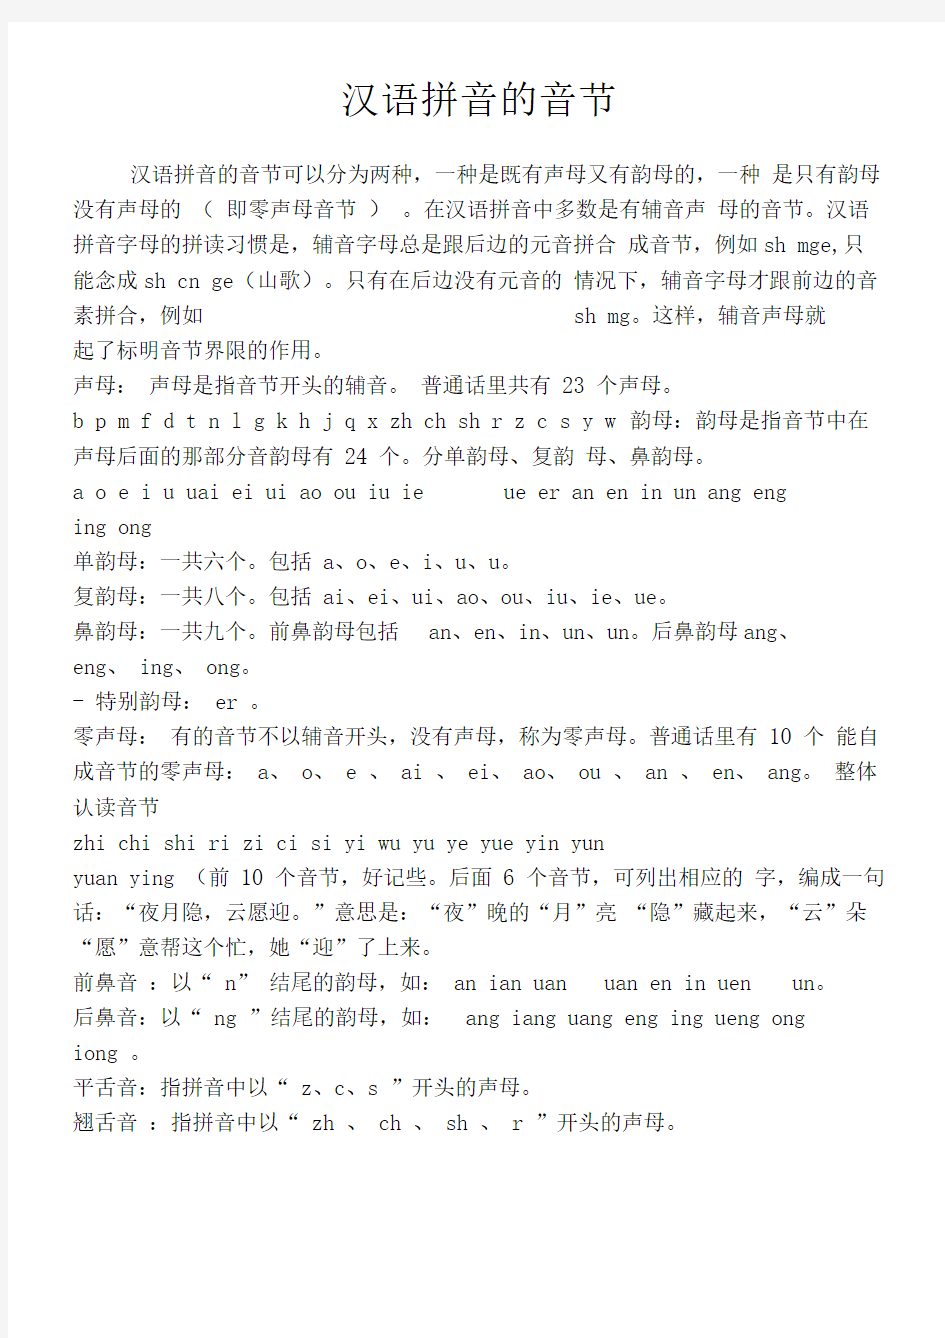 汉语拼音的音节拼写规则总结